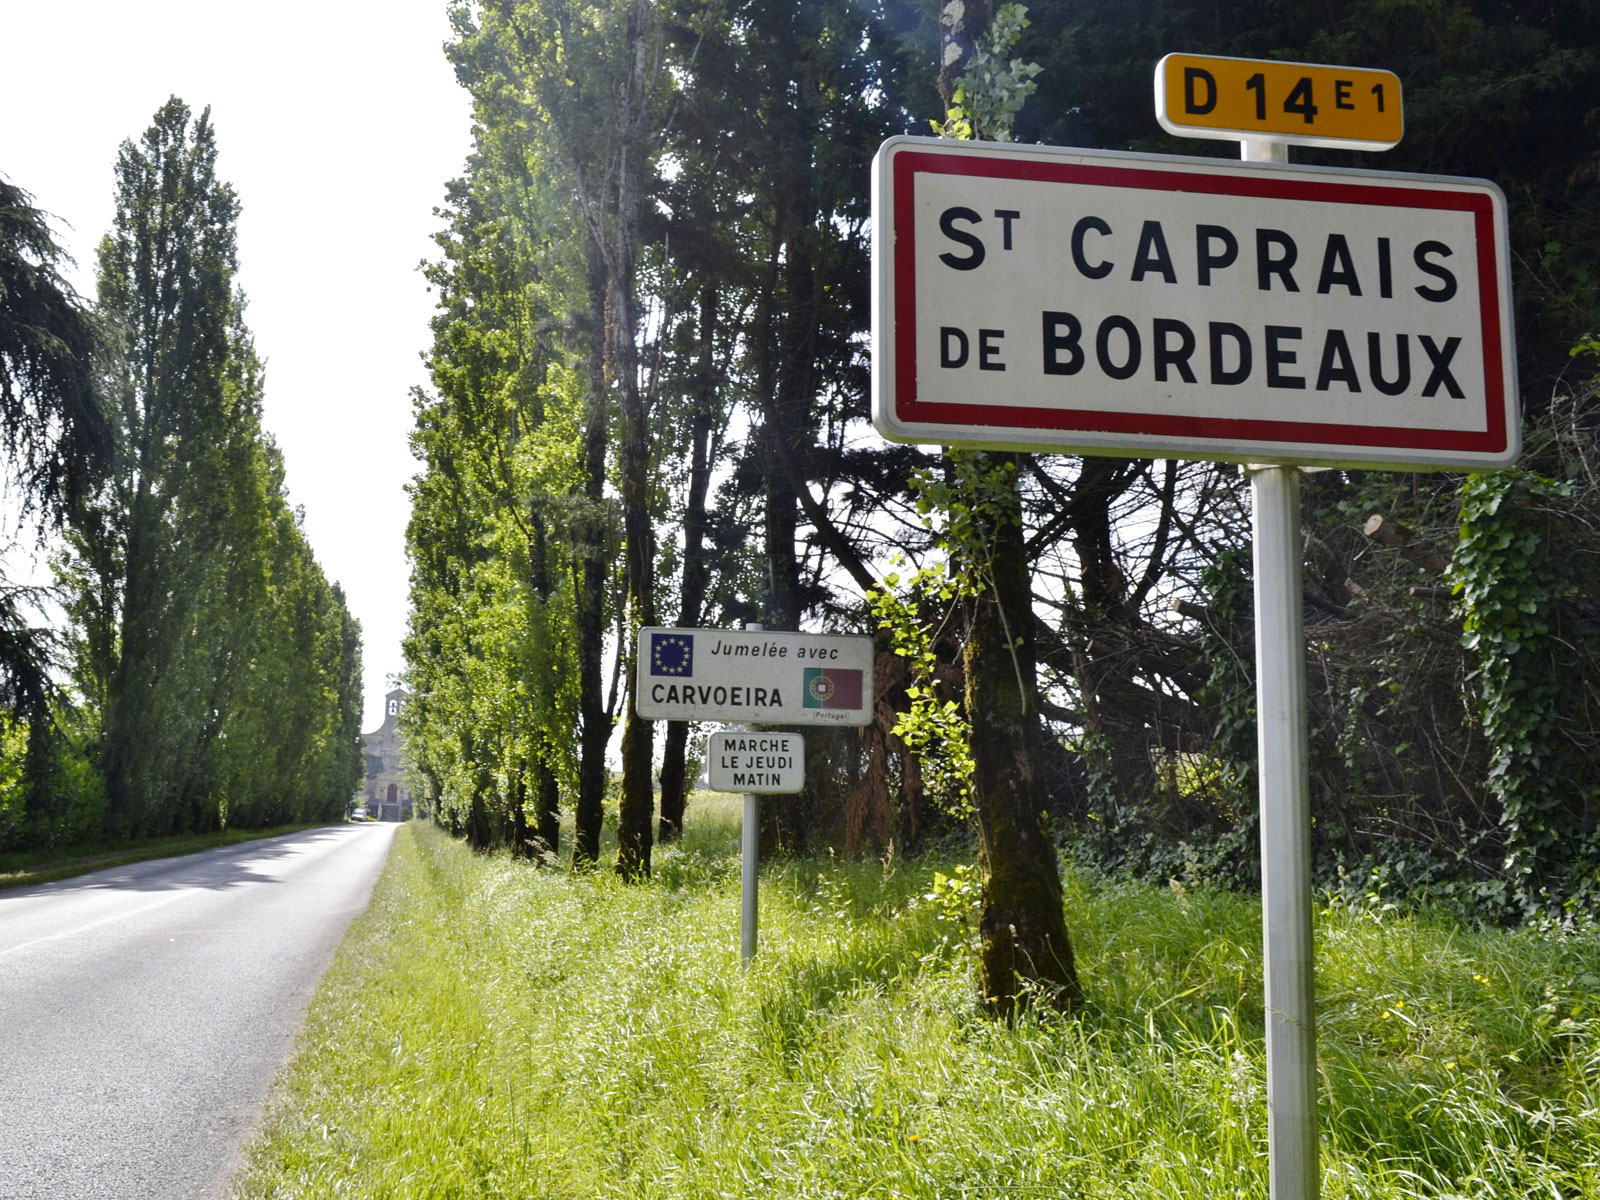 SAINT-CAPRAIS-DE-BORDEAUX